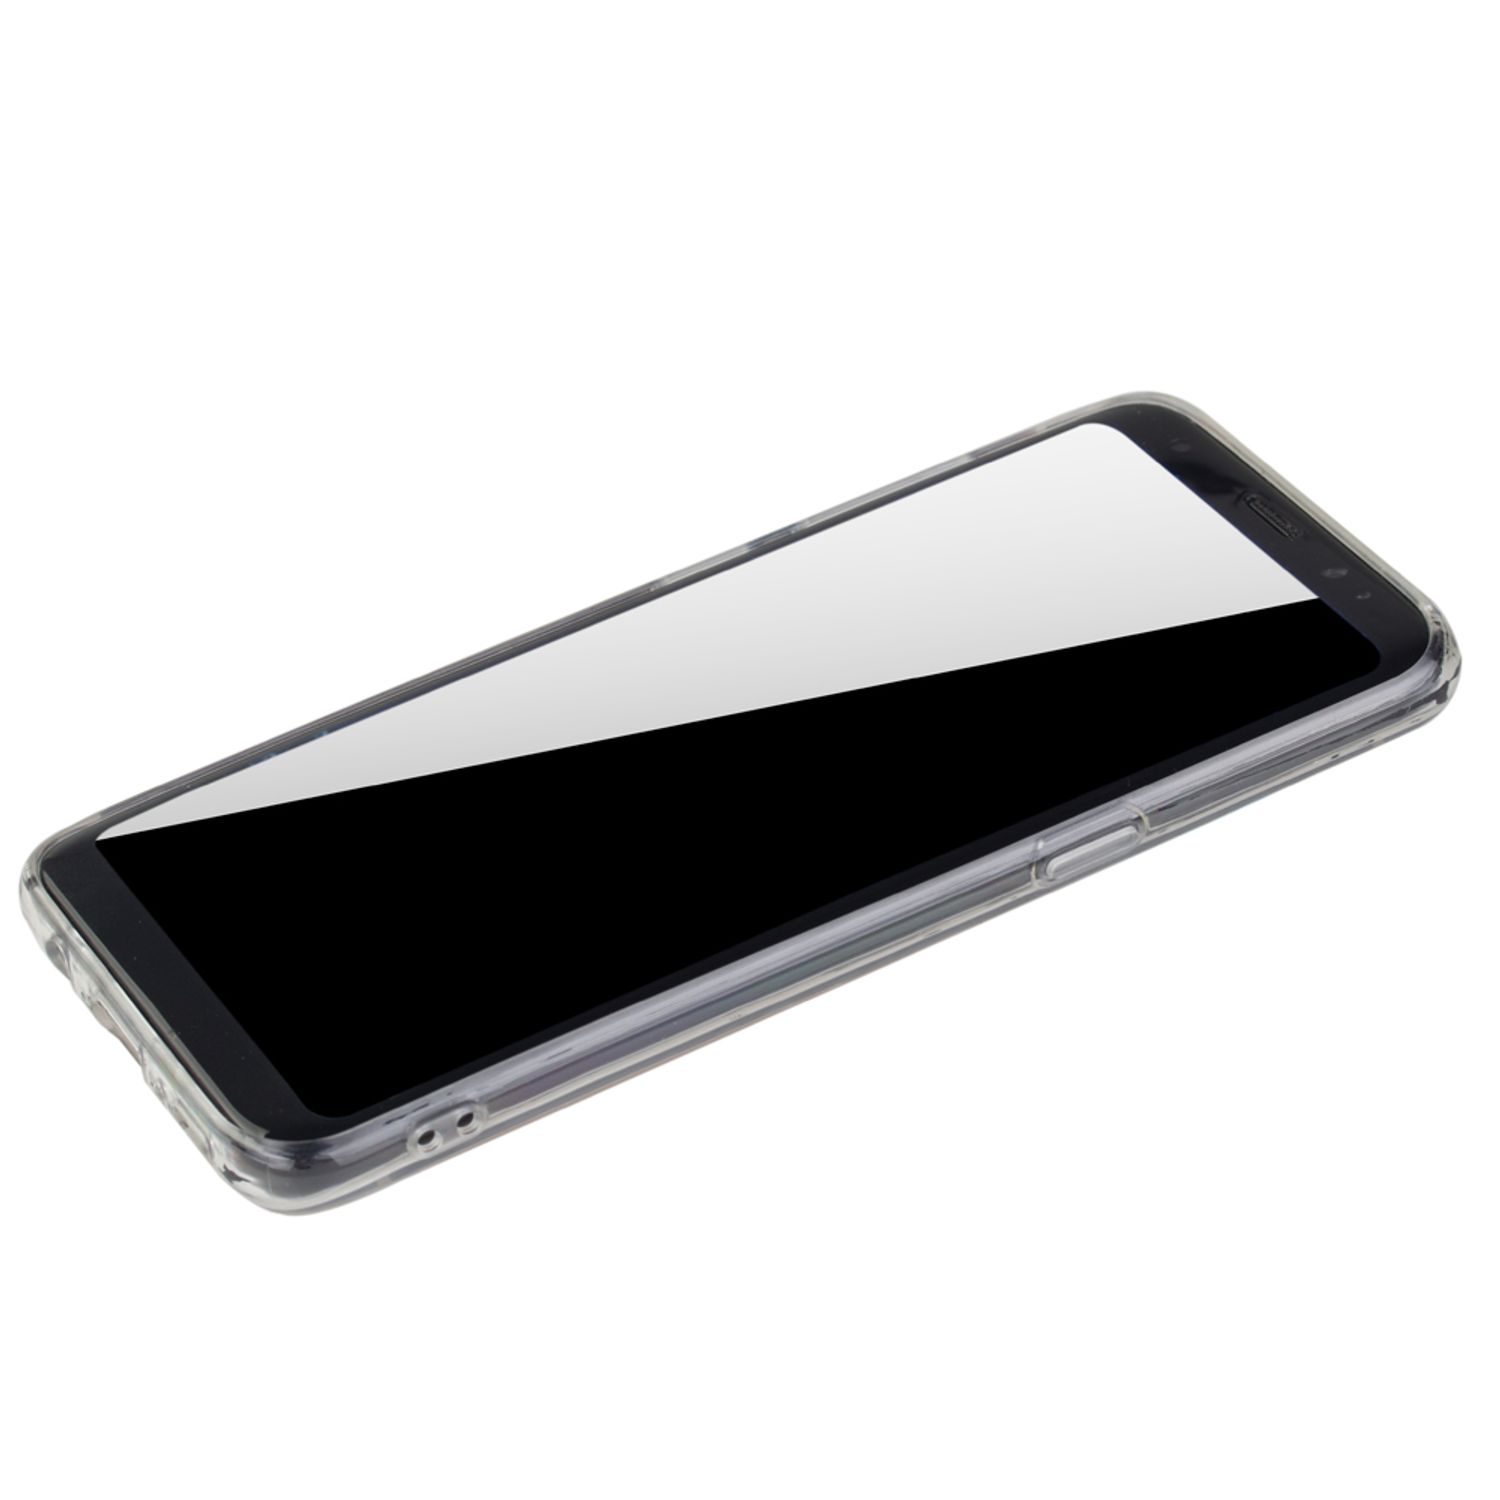 DESIGN Galaxy S9, KÖNIG Schutzhülle, Rosa Samsung, Backcover,